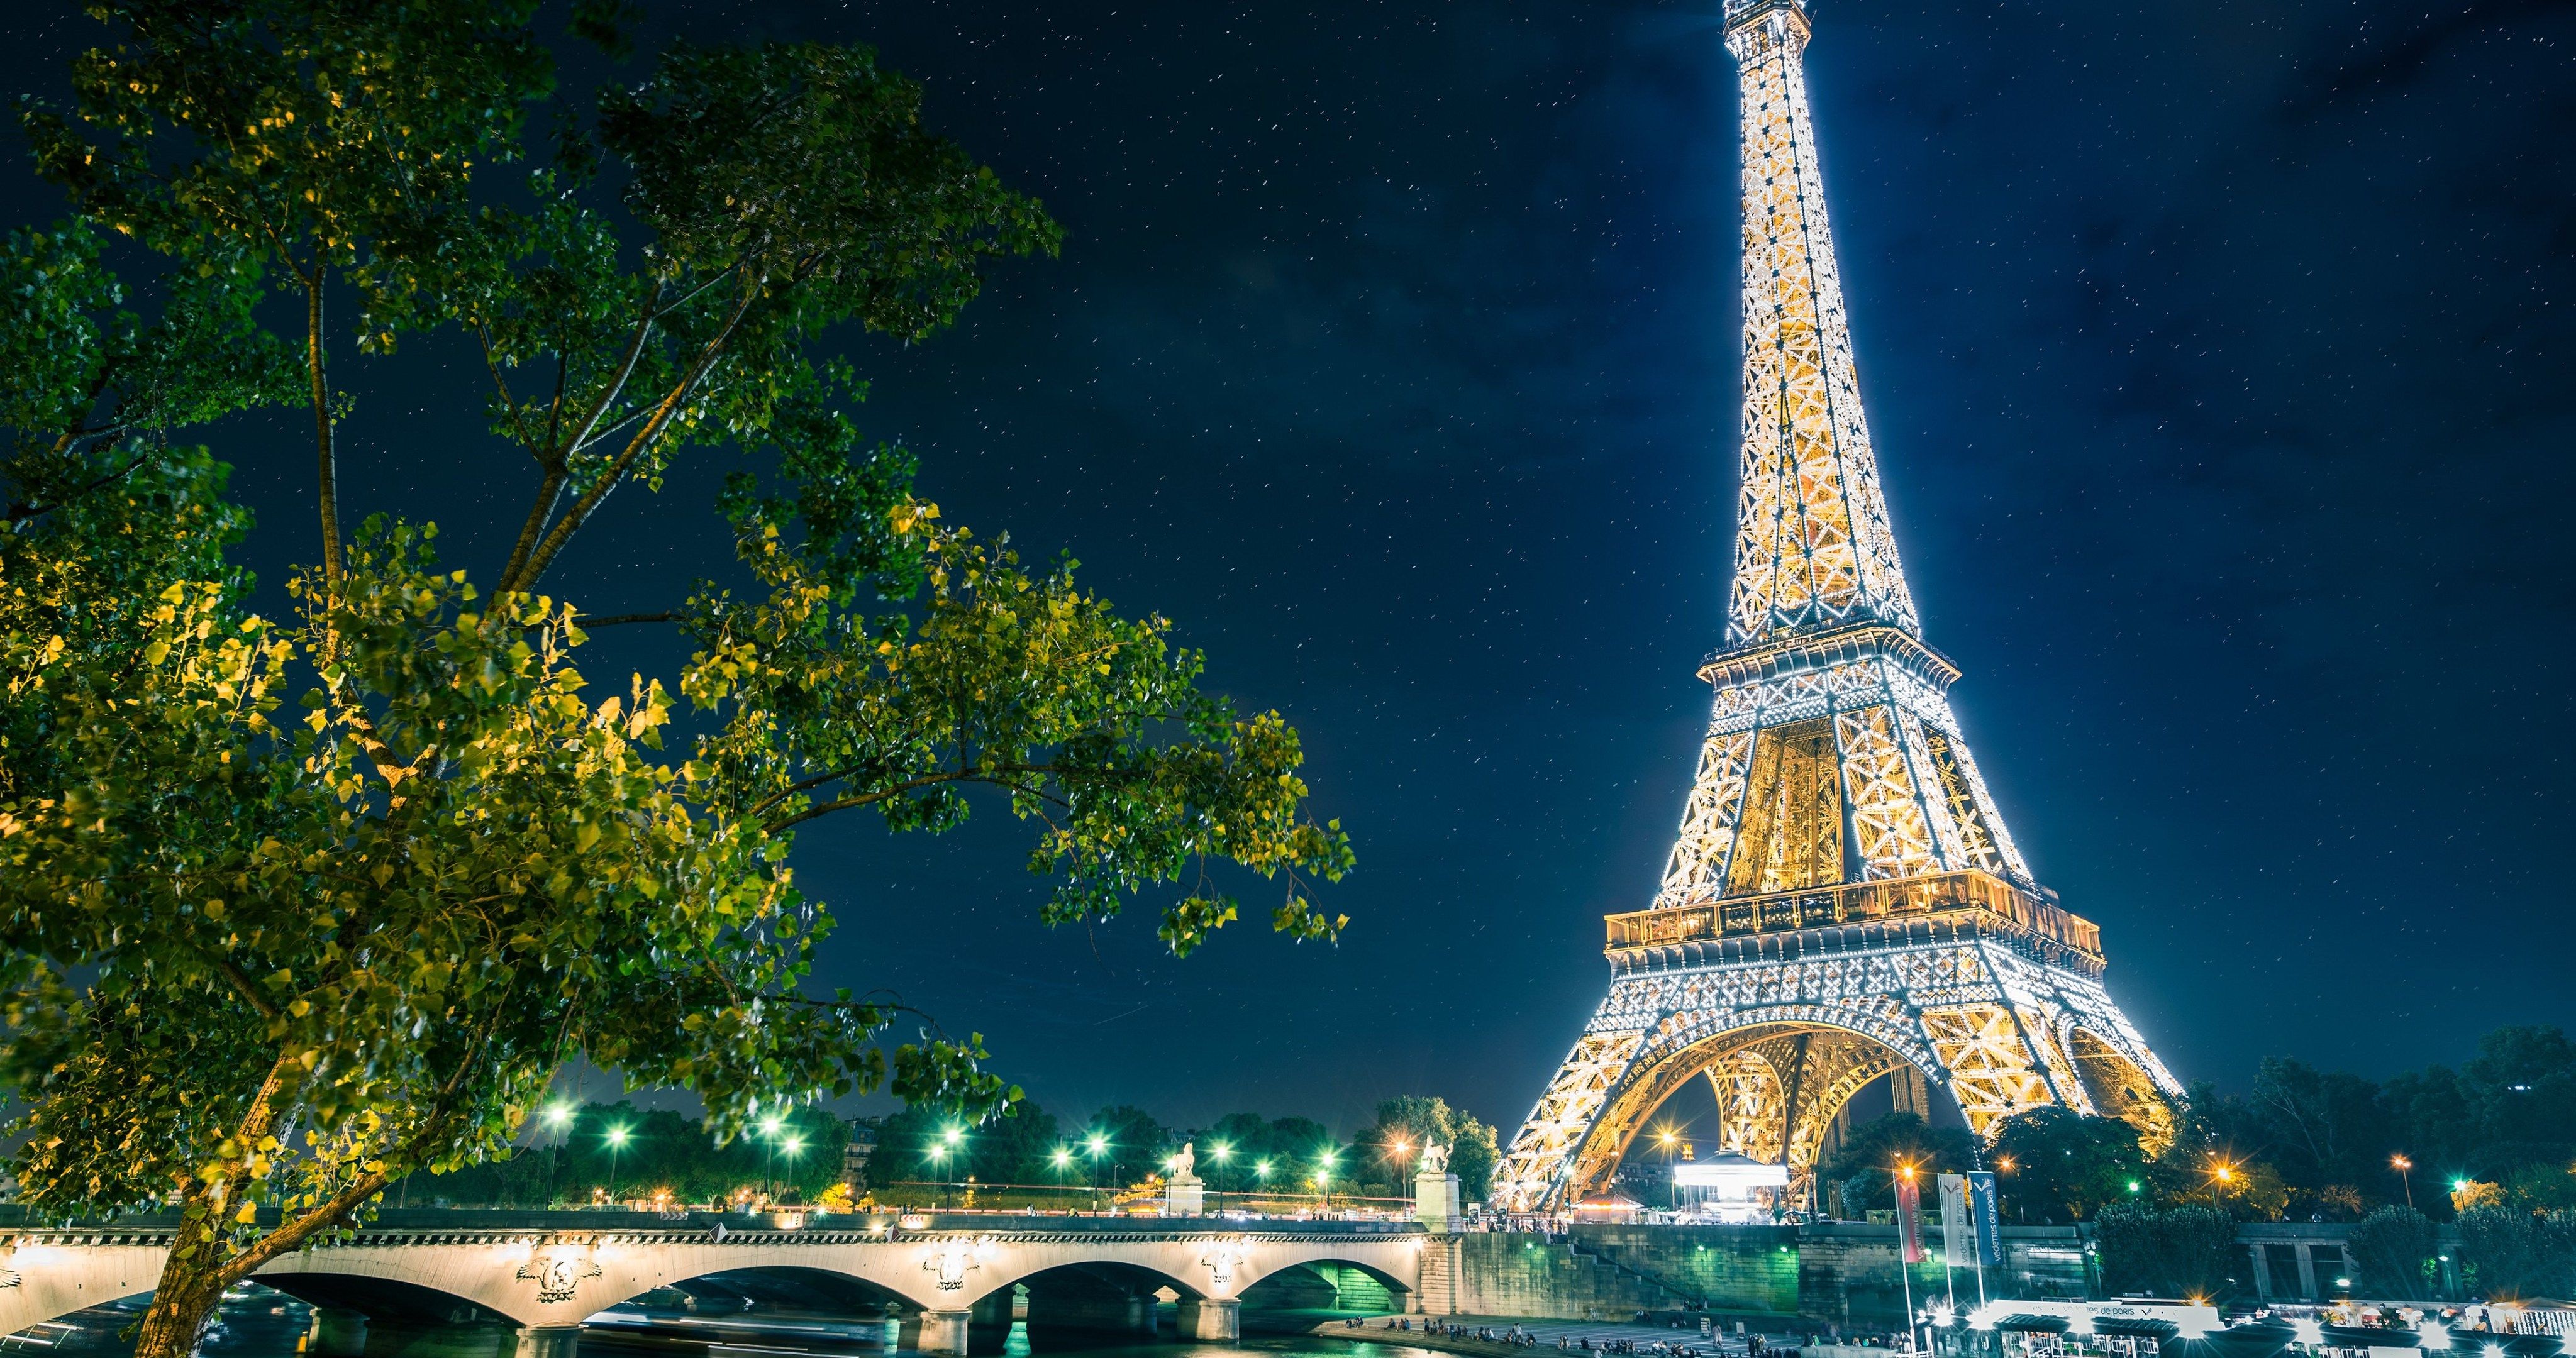 Paris The Eiffel Tower 4k Ultra HD Wallpaper Ololoshenka In